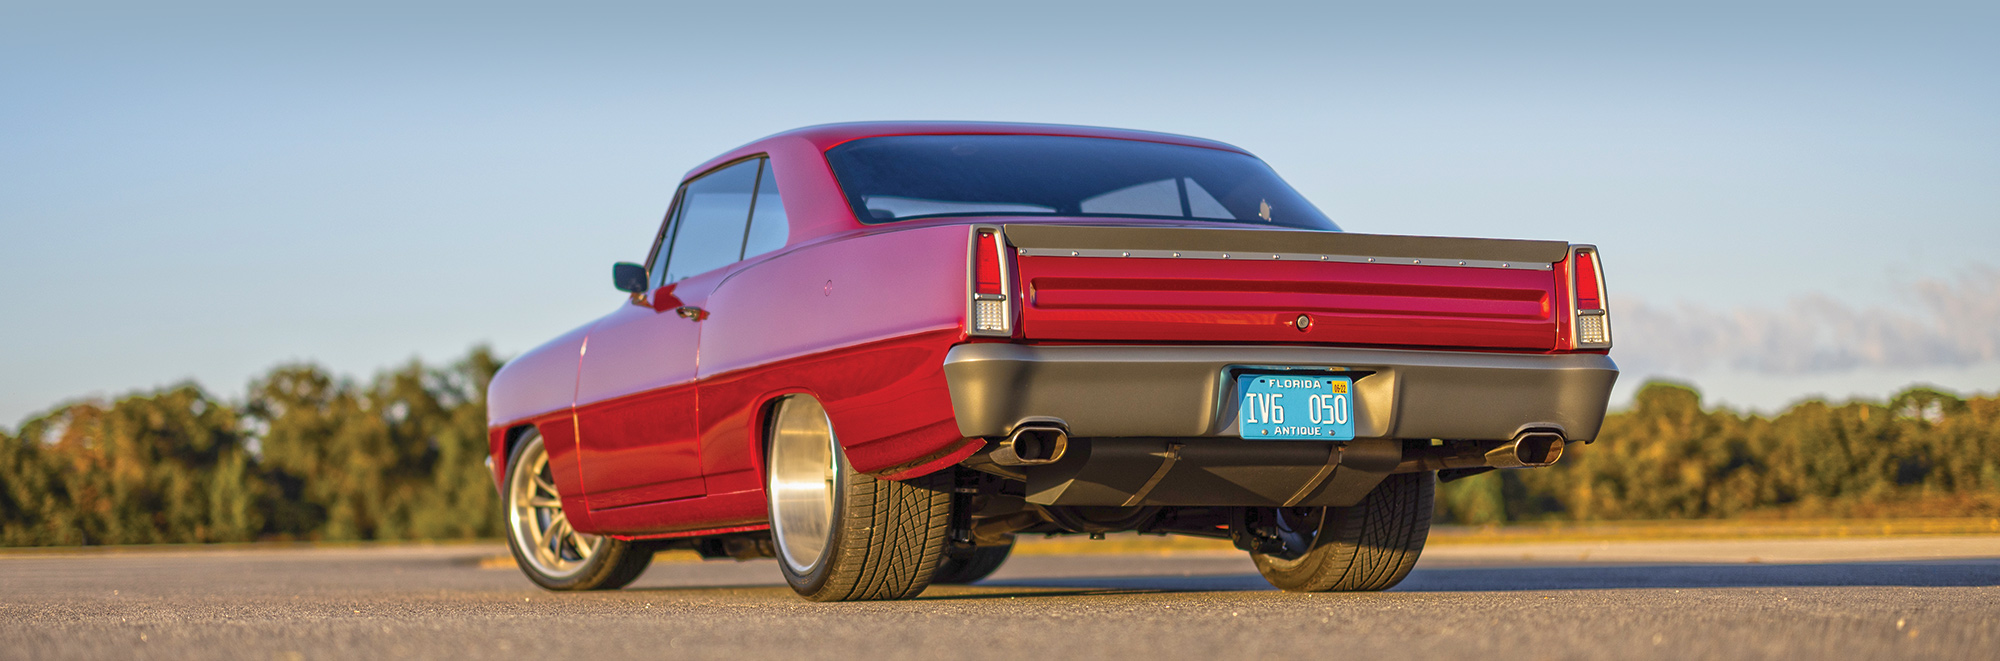 '66 Nova rear view